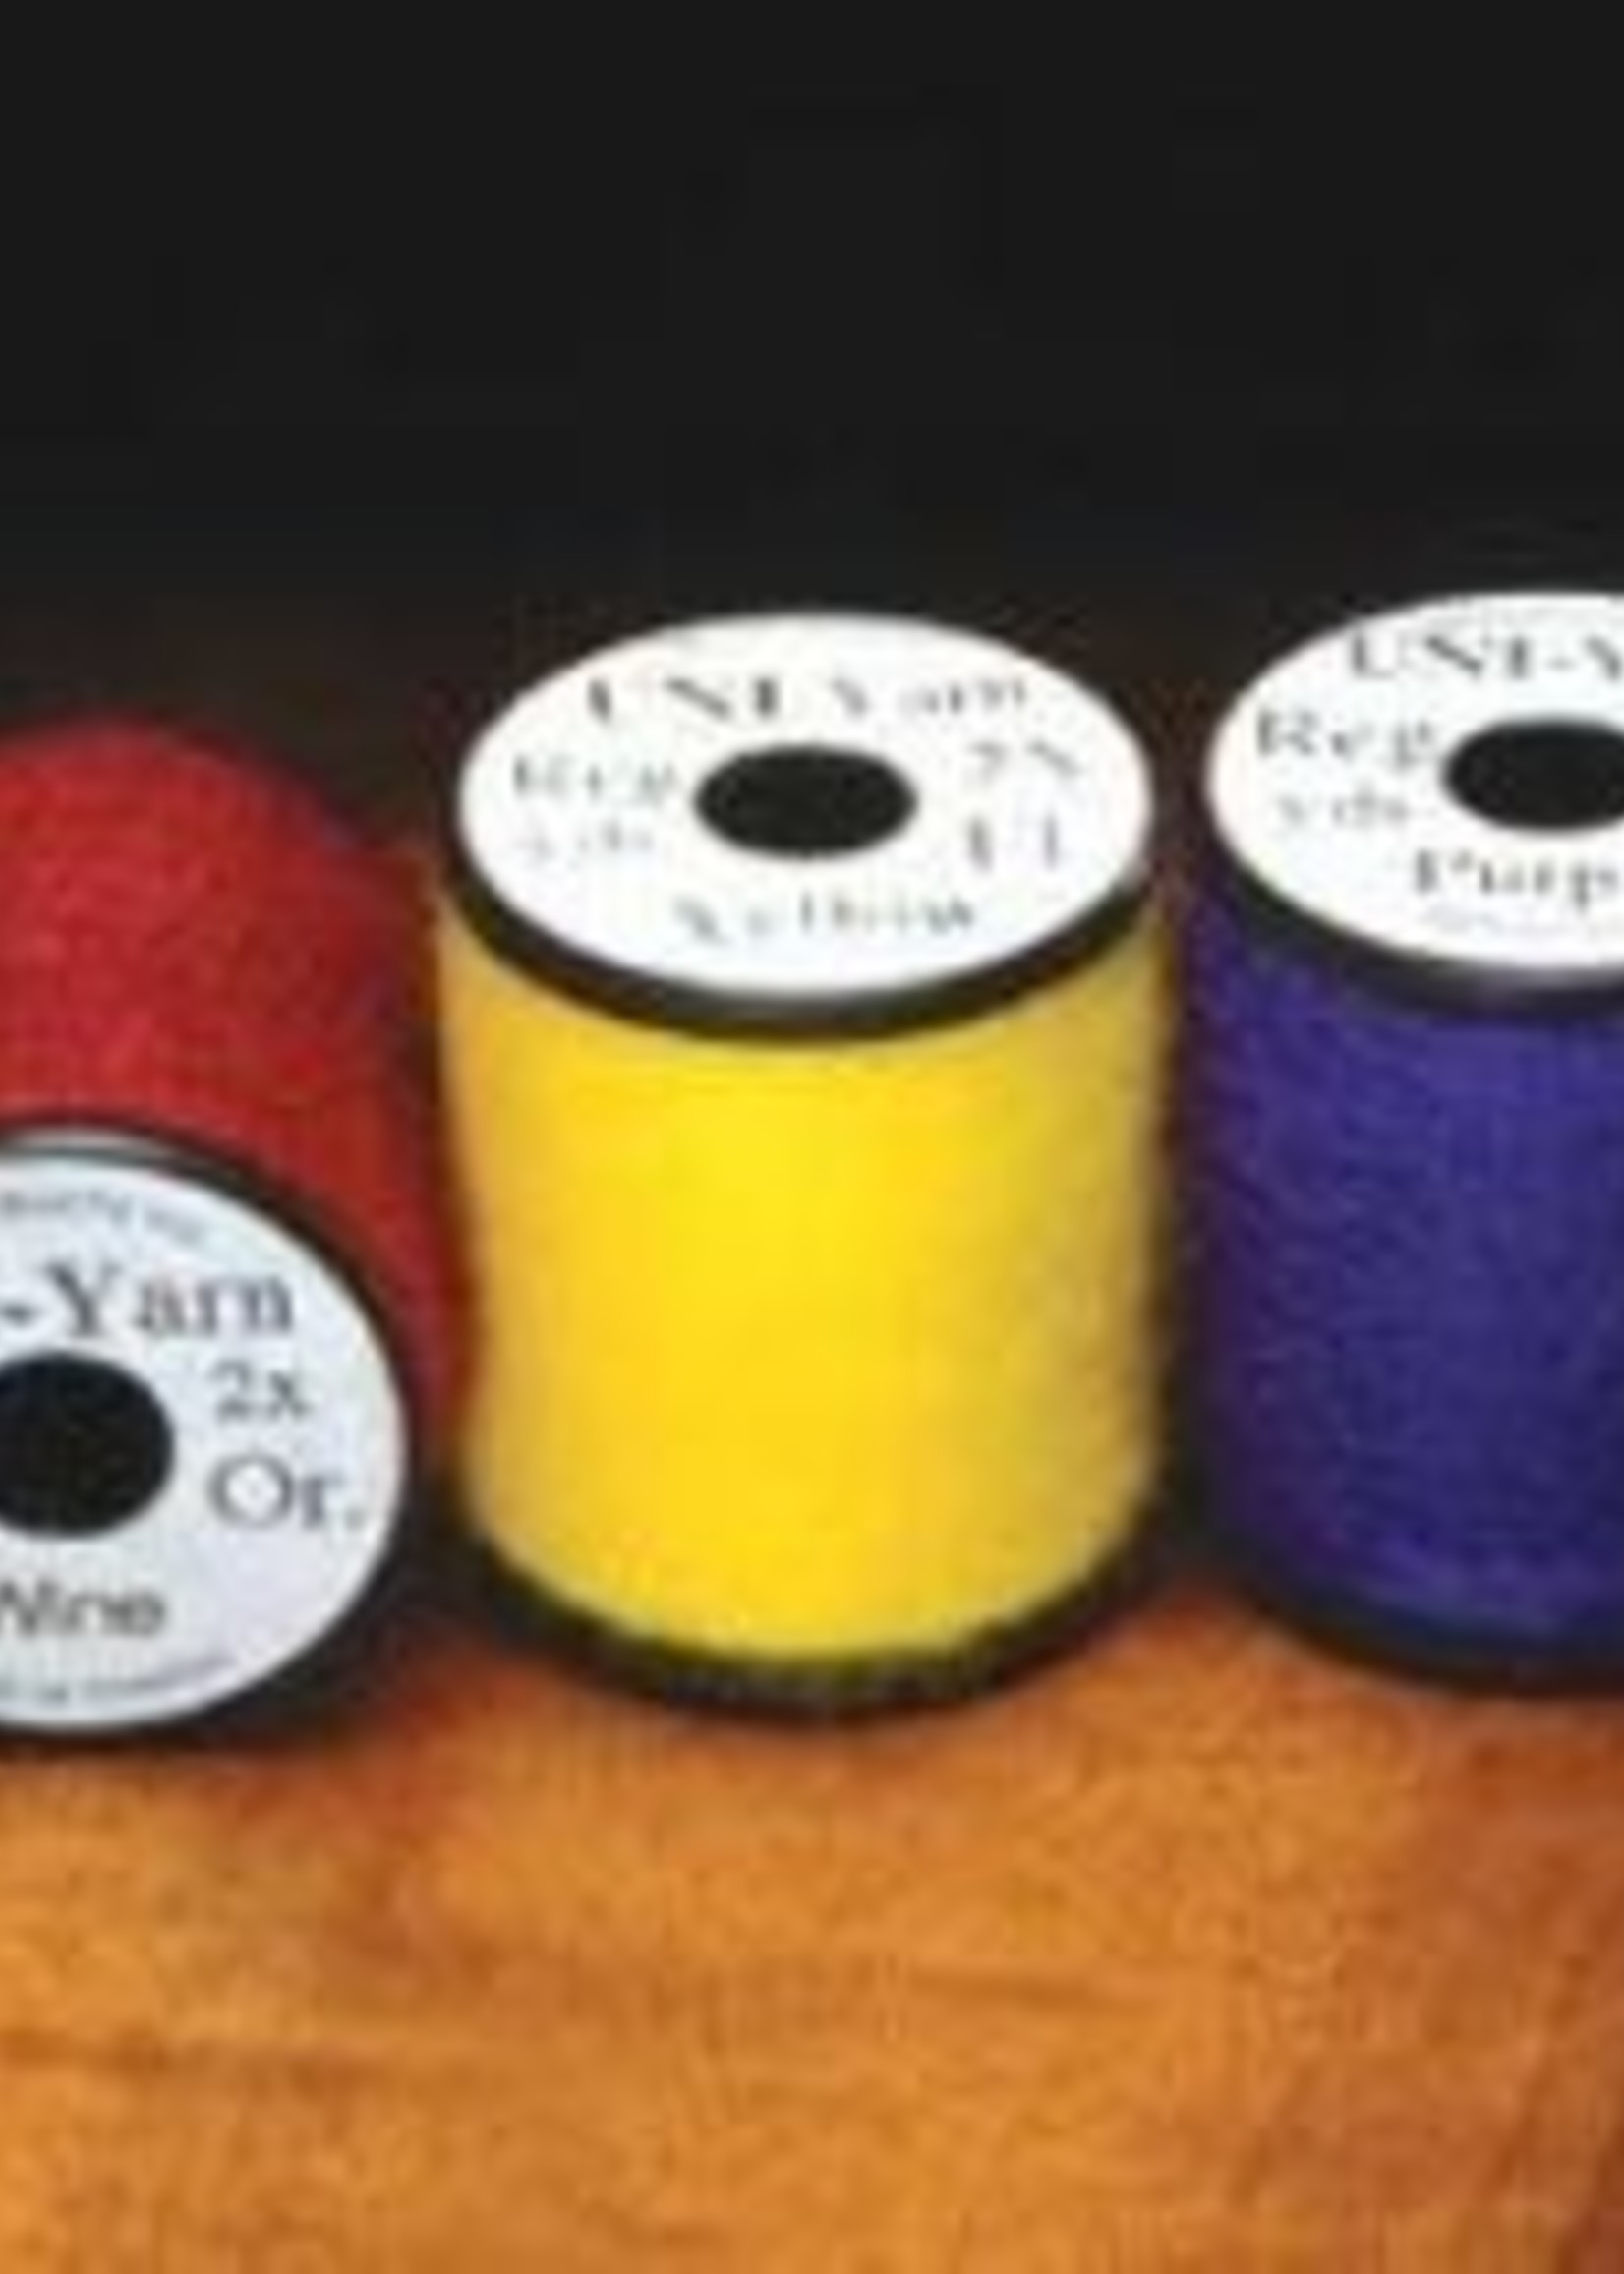 UNI Products Uni Yarn